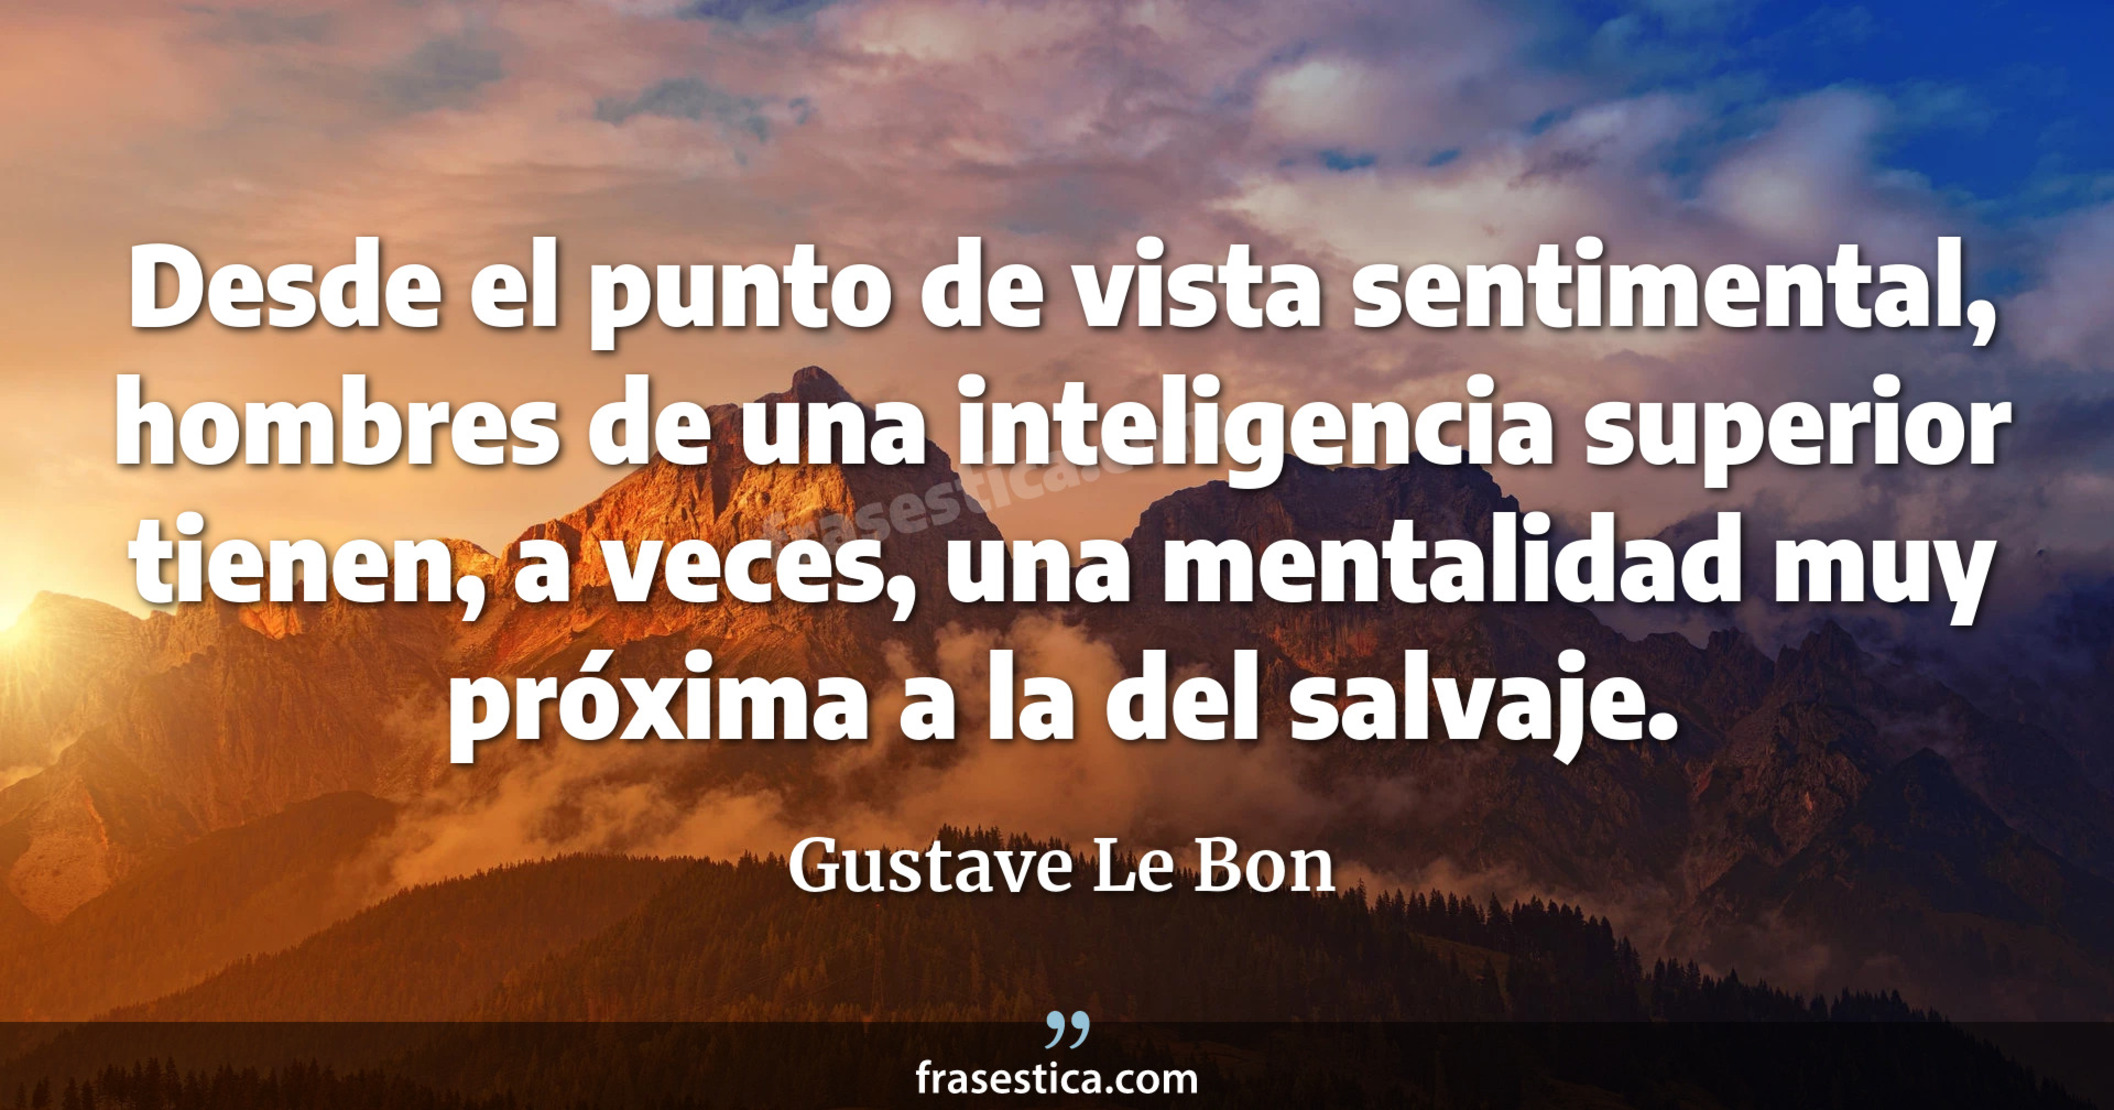 Desde el punto de vista sentimental, hombres de una inteligencia superior tienen, a veces, una mentalidad muy próxima a la del salvaje. - Gustave Le Bon